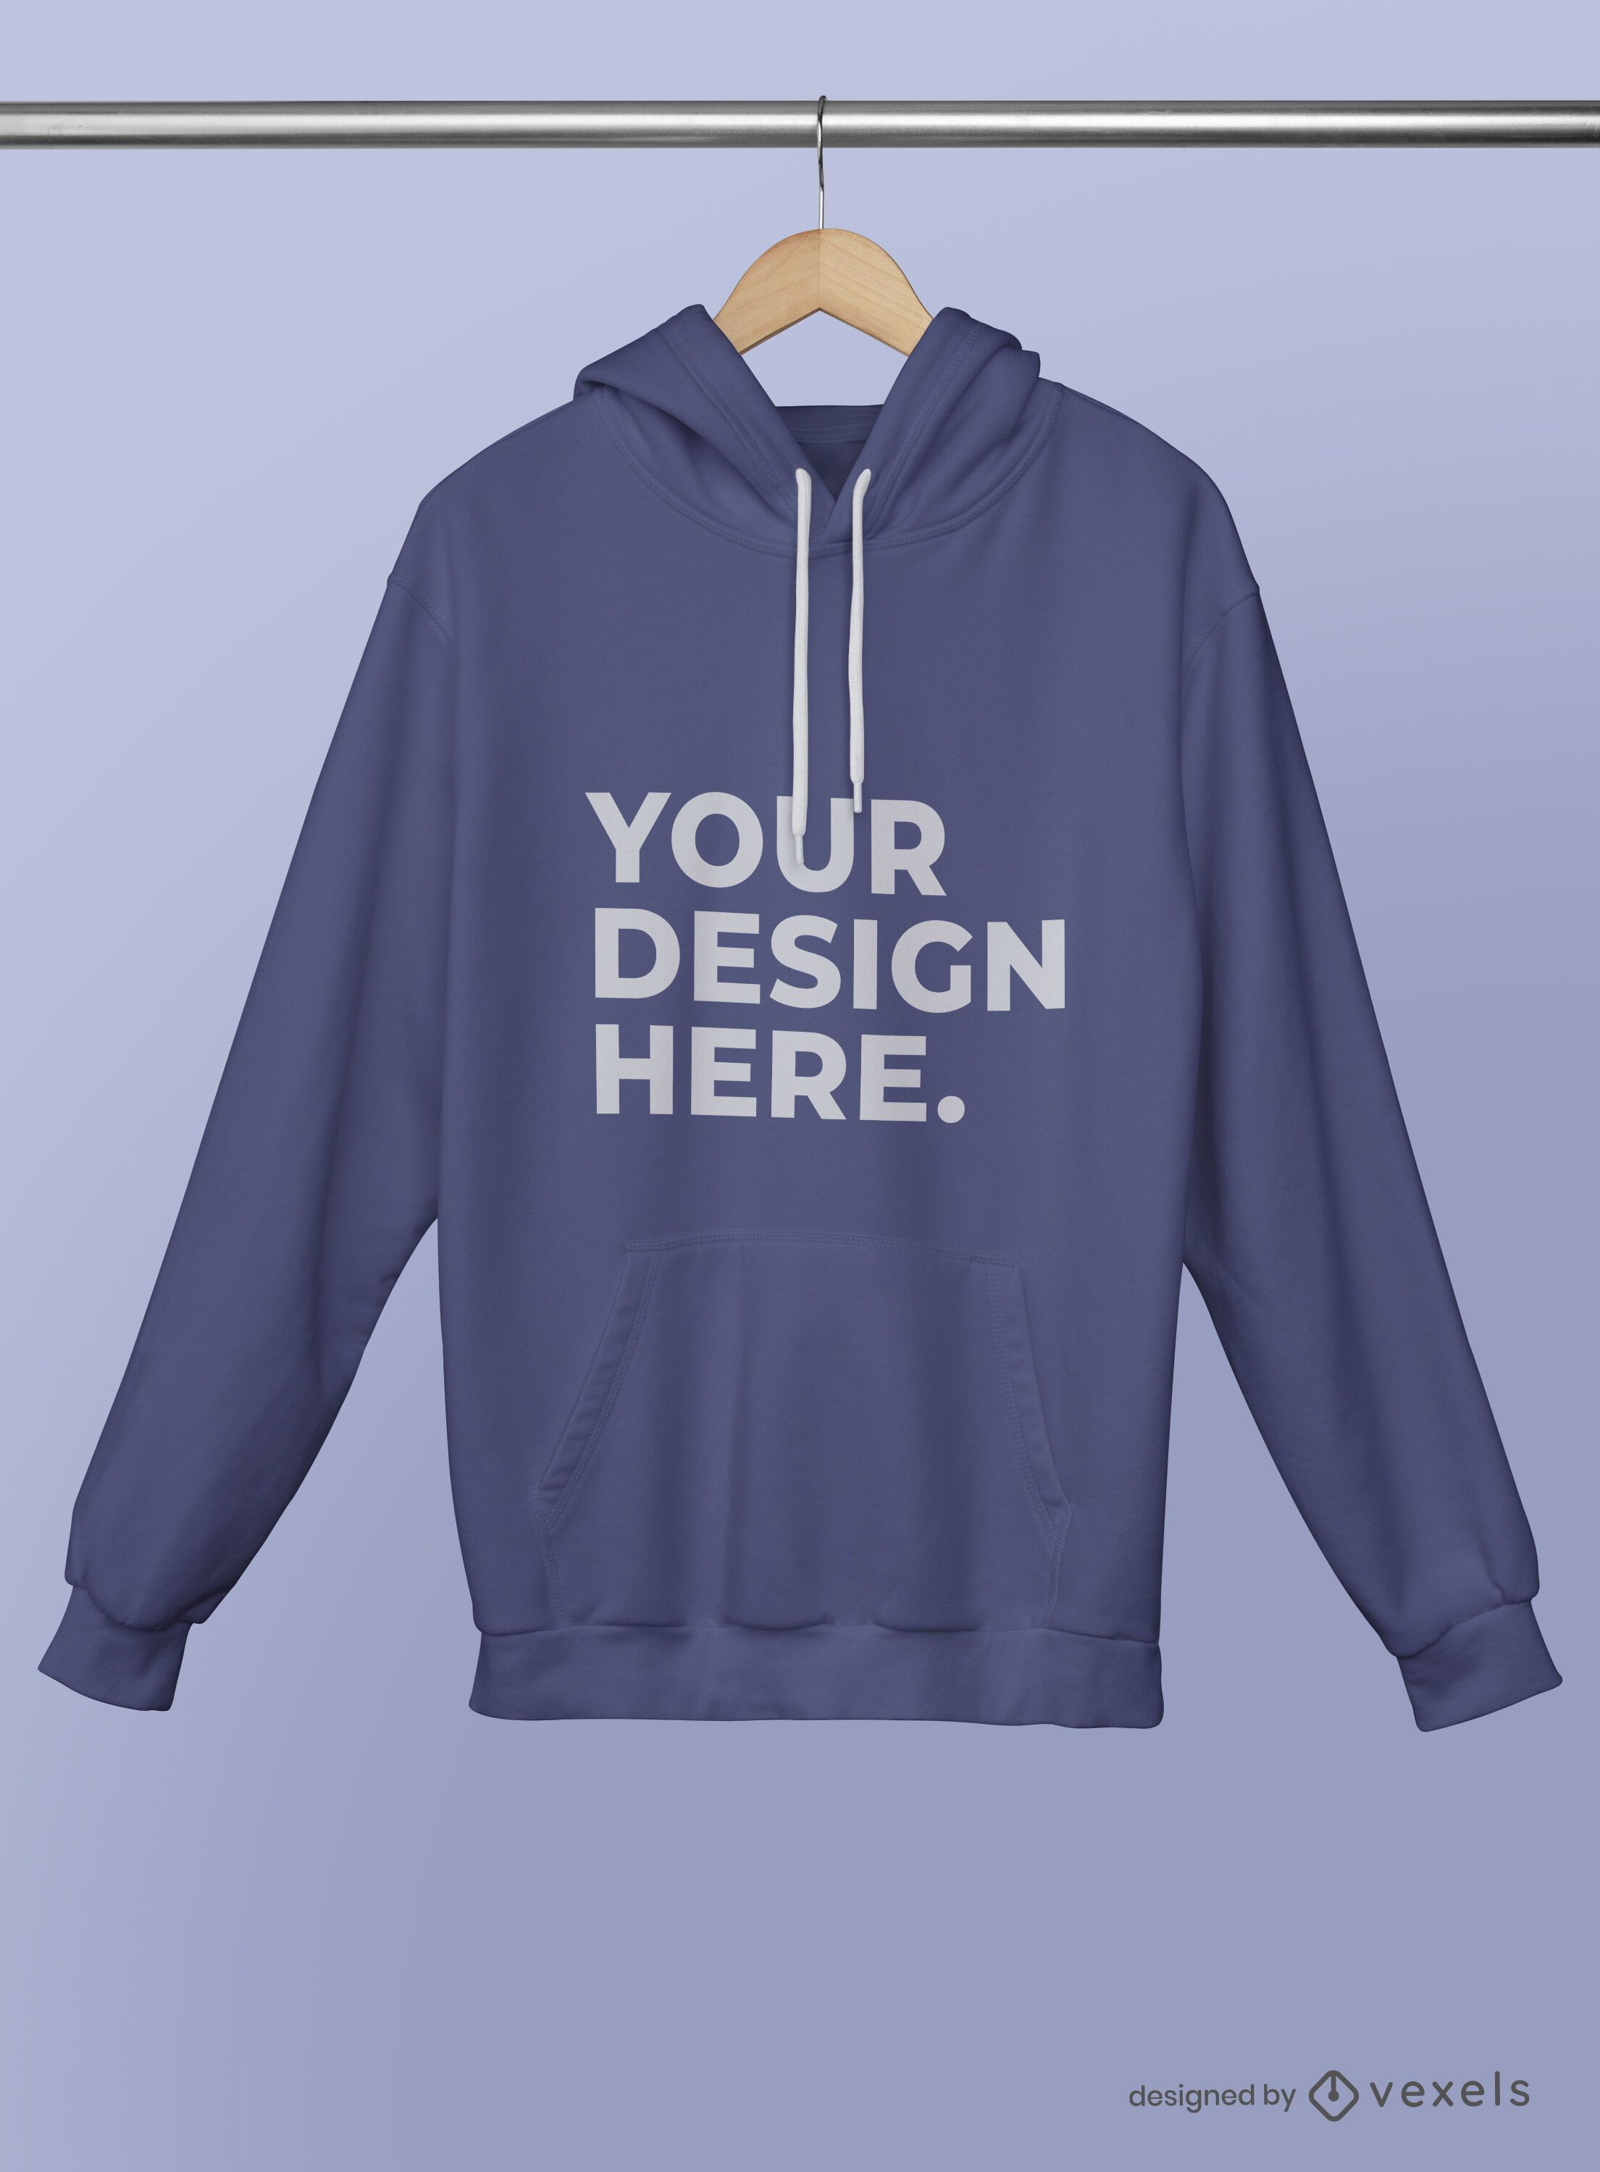 Hanged hoodie mockup psd design